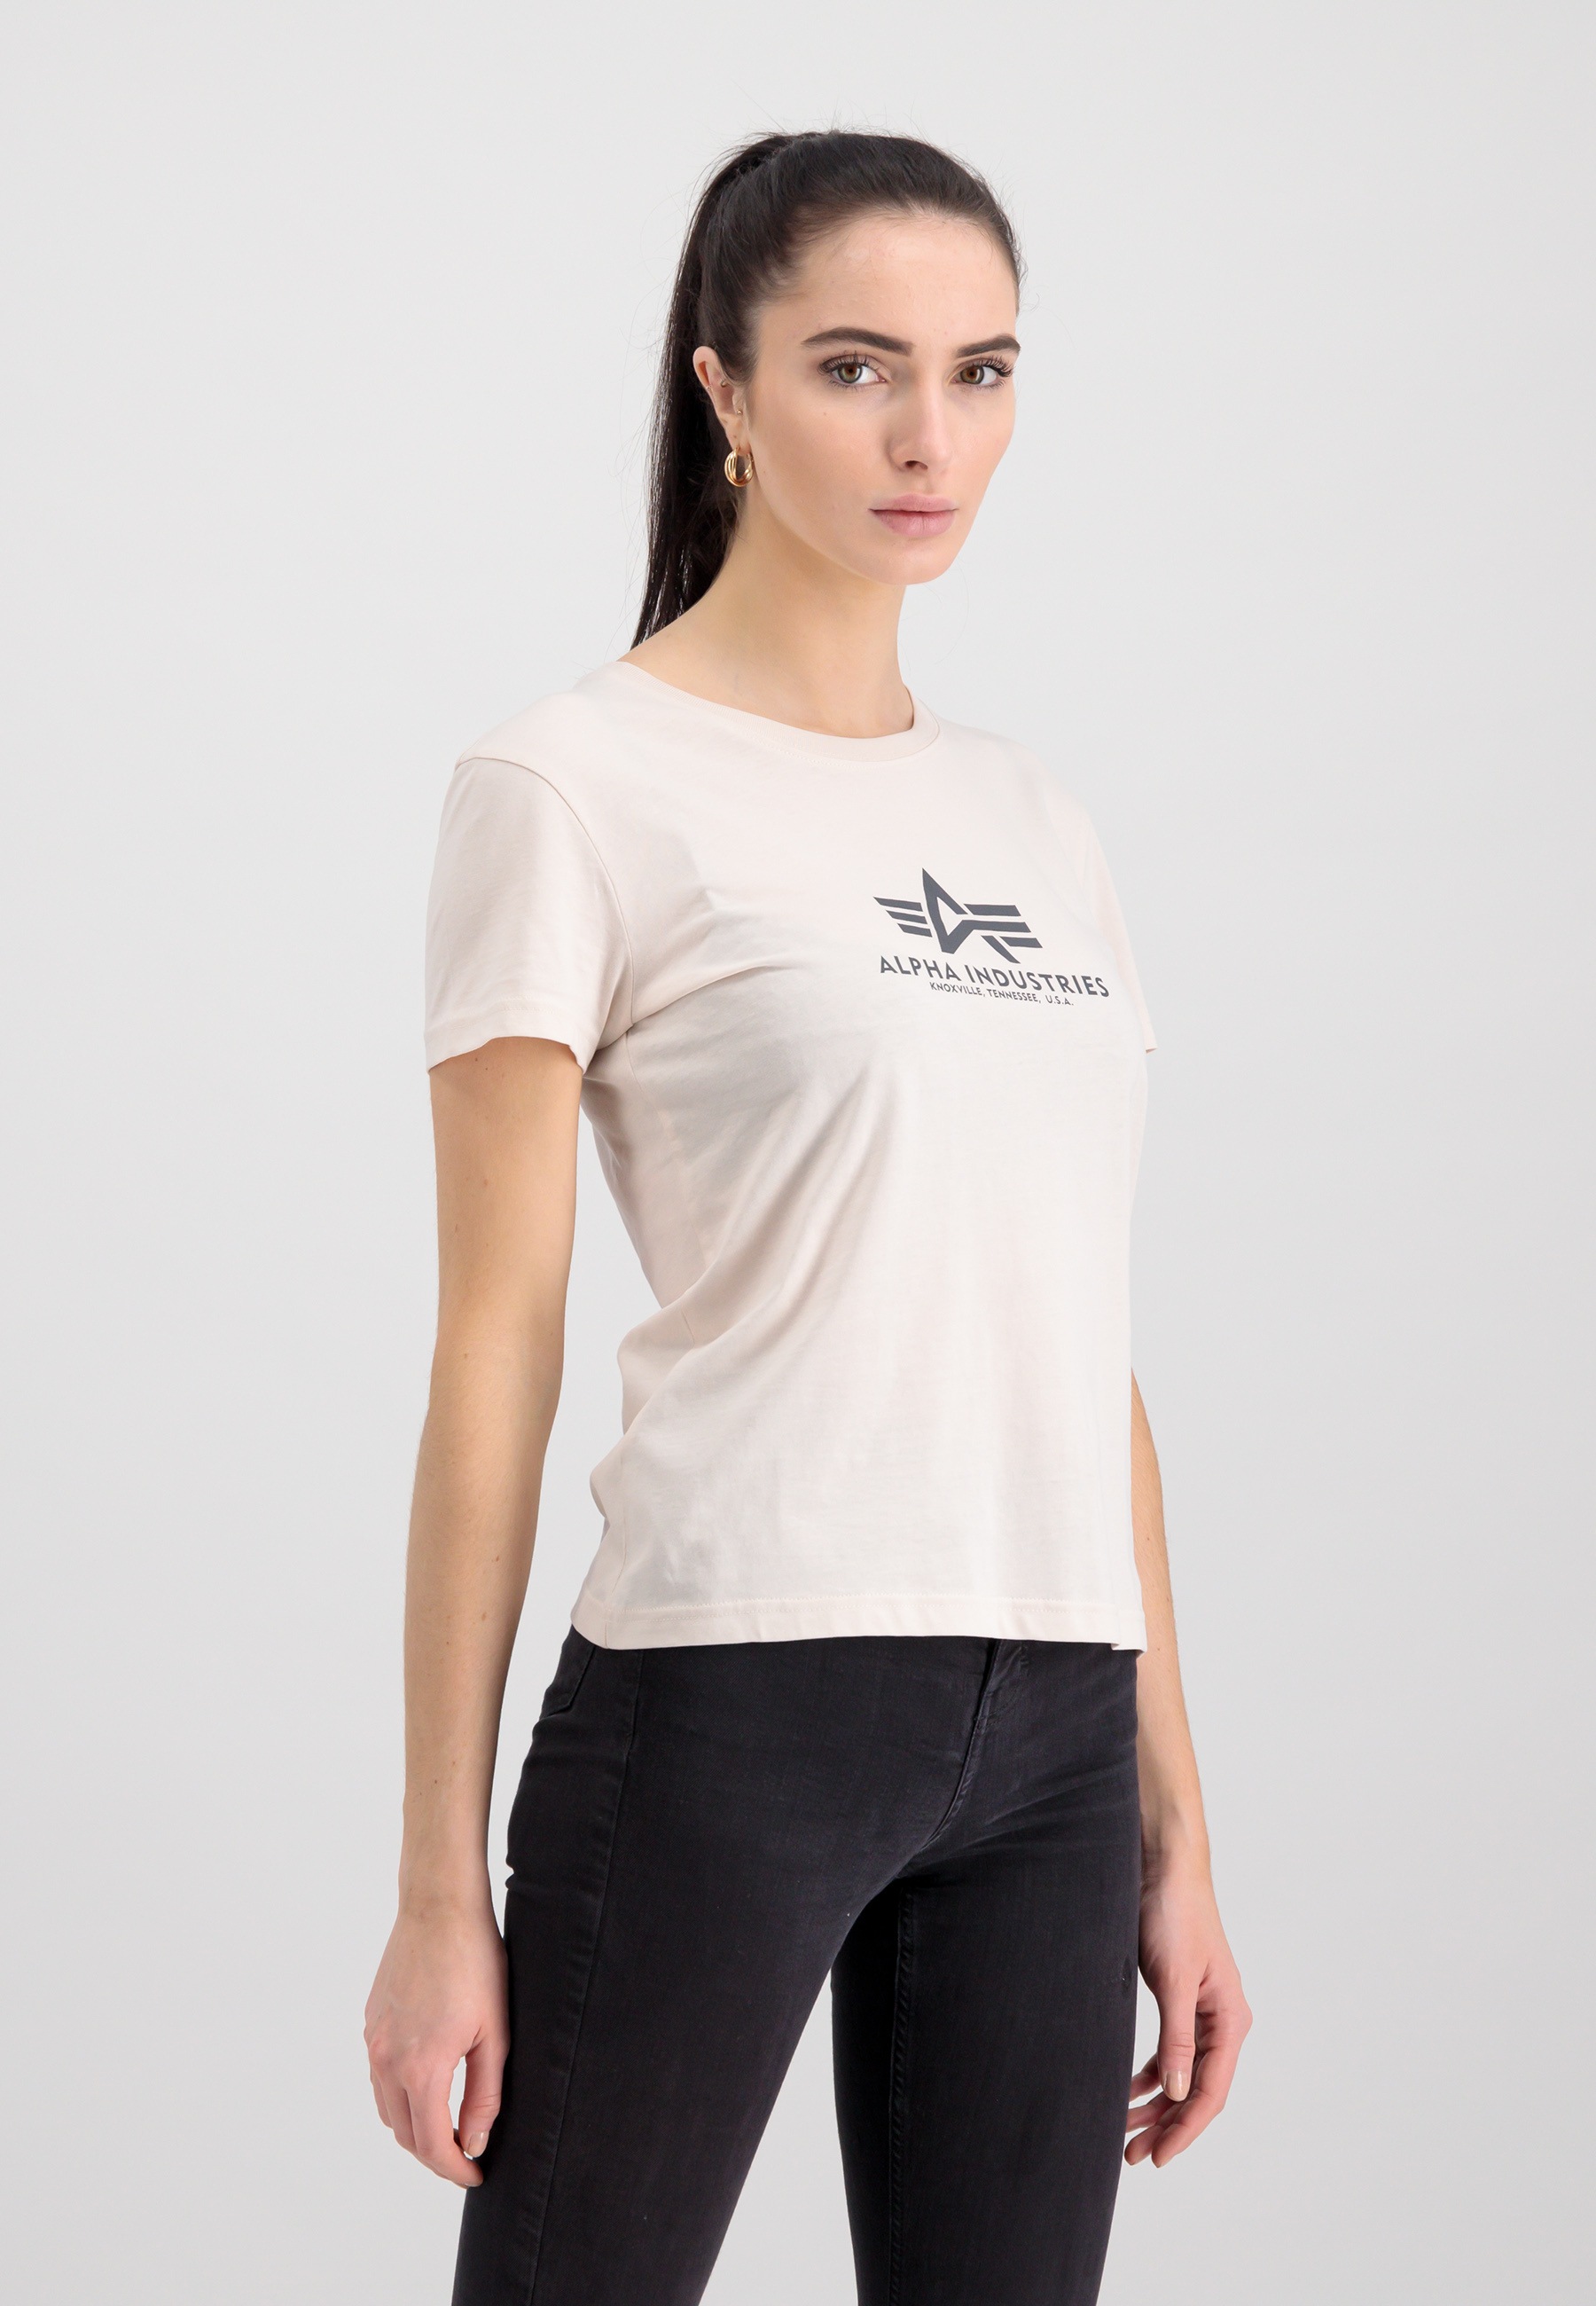 Industries OTTO »Alpha bestellen Women Wmn« T-Shirts Shop T-Shirt Online Basic im Alpha T - Industries New